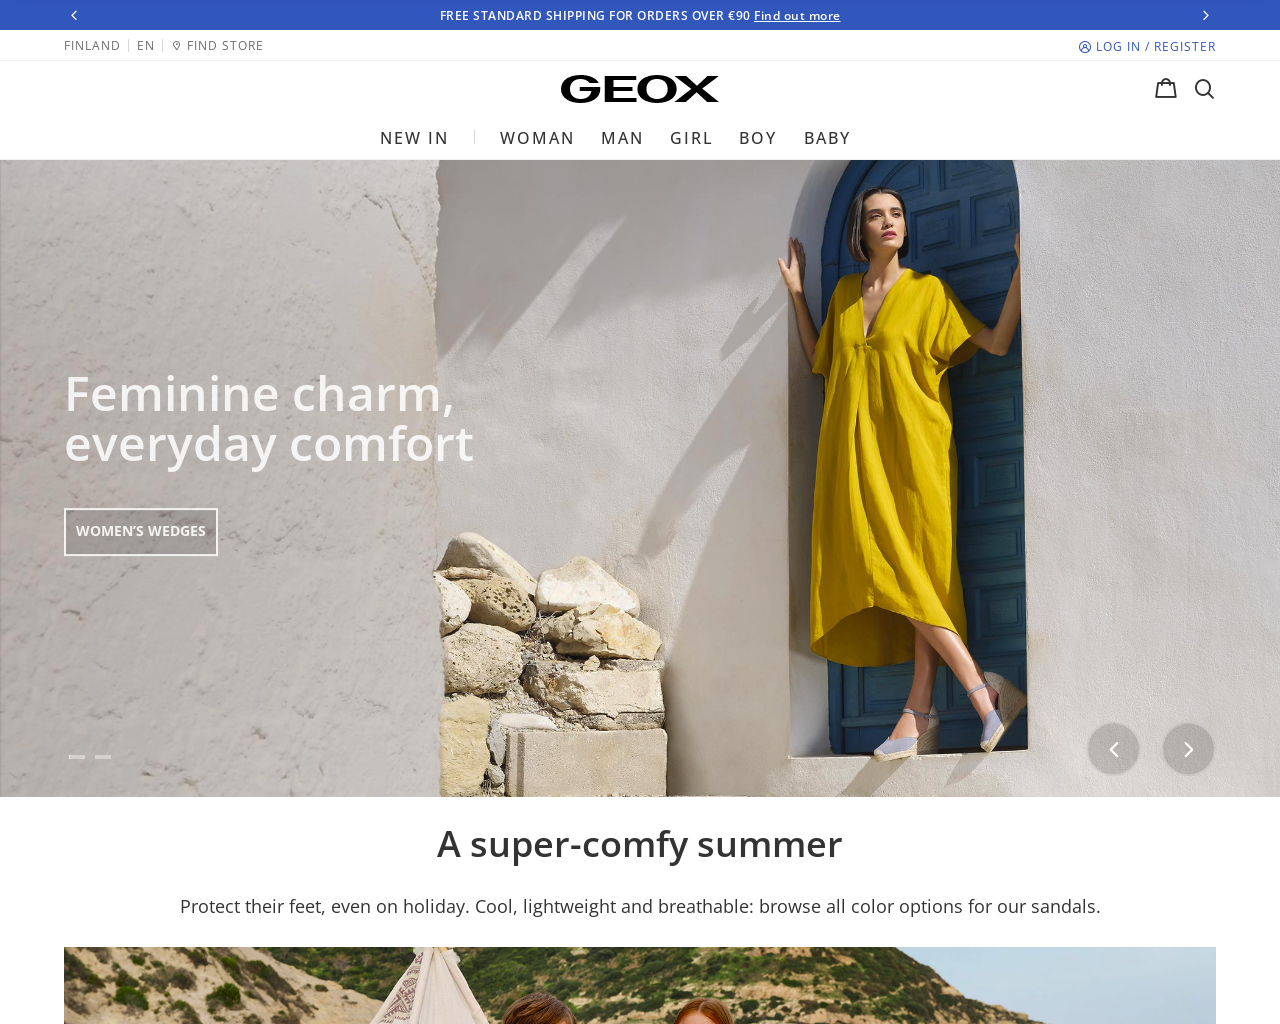 www.geox.com